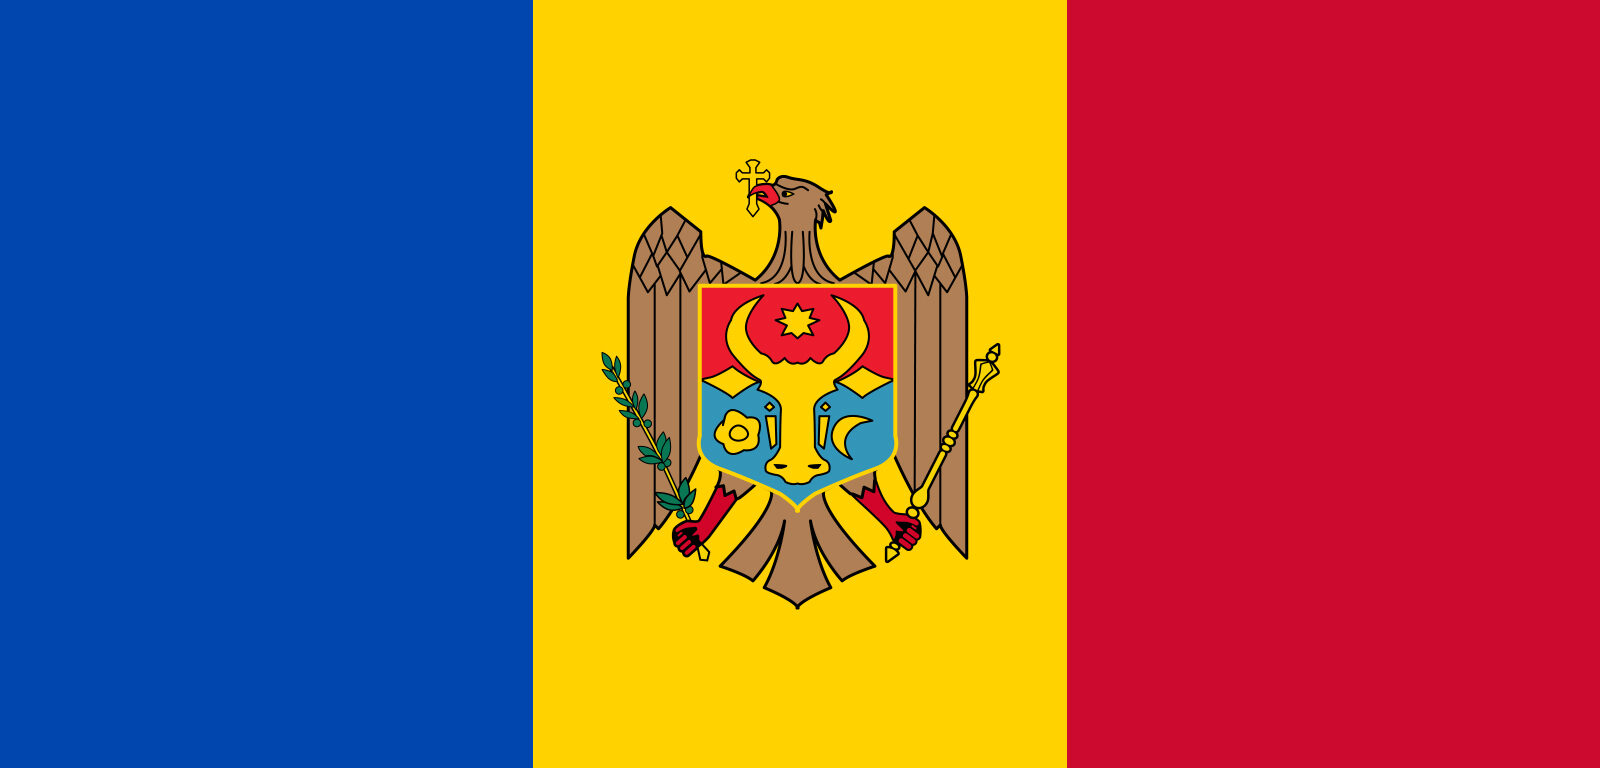 Flag-Moldova